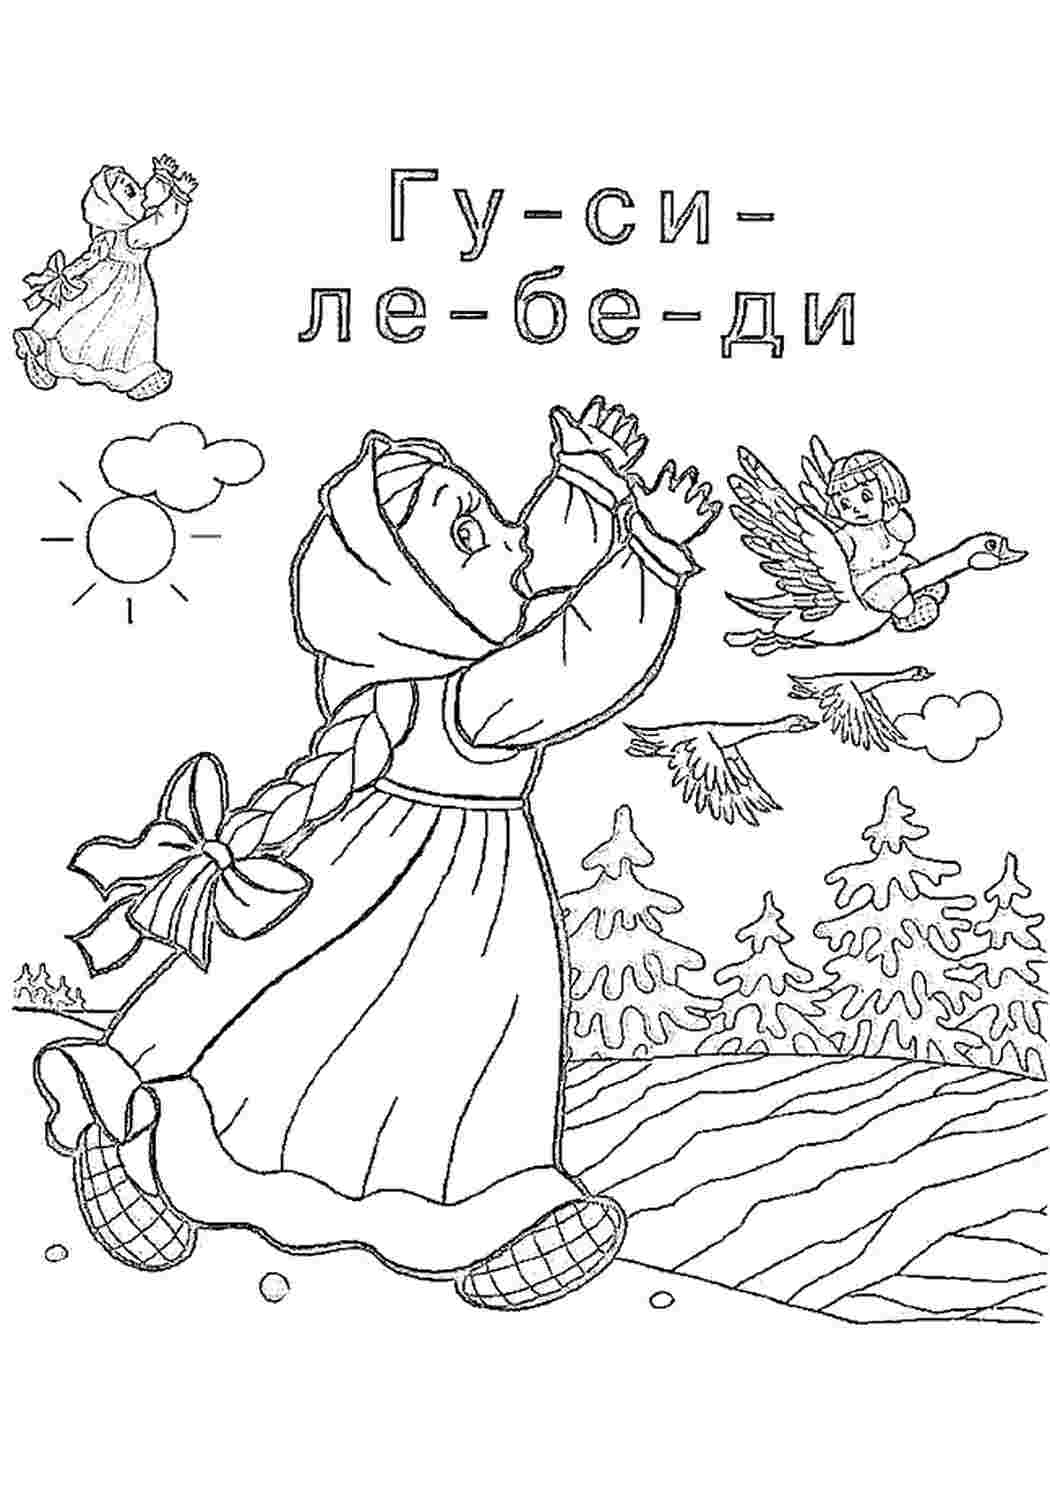 Иллюстрации к сказкам раскраски. Сказка-раскраска. Гуси-лебеди. Раскраски по сказкам для детей. Гуси лебеди раскраска для детей. Раскраски к сказкам для детей русские народные.